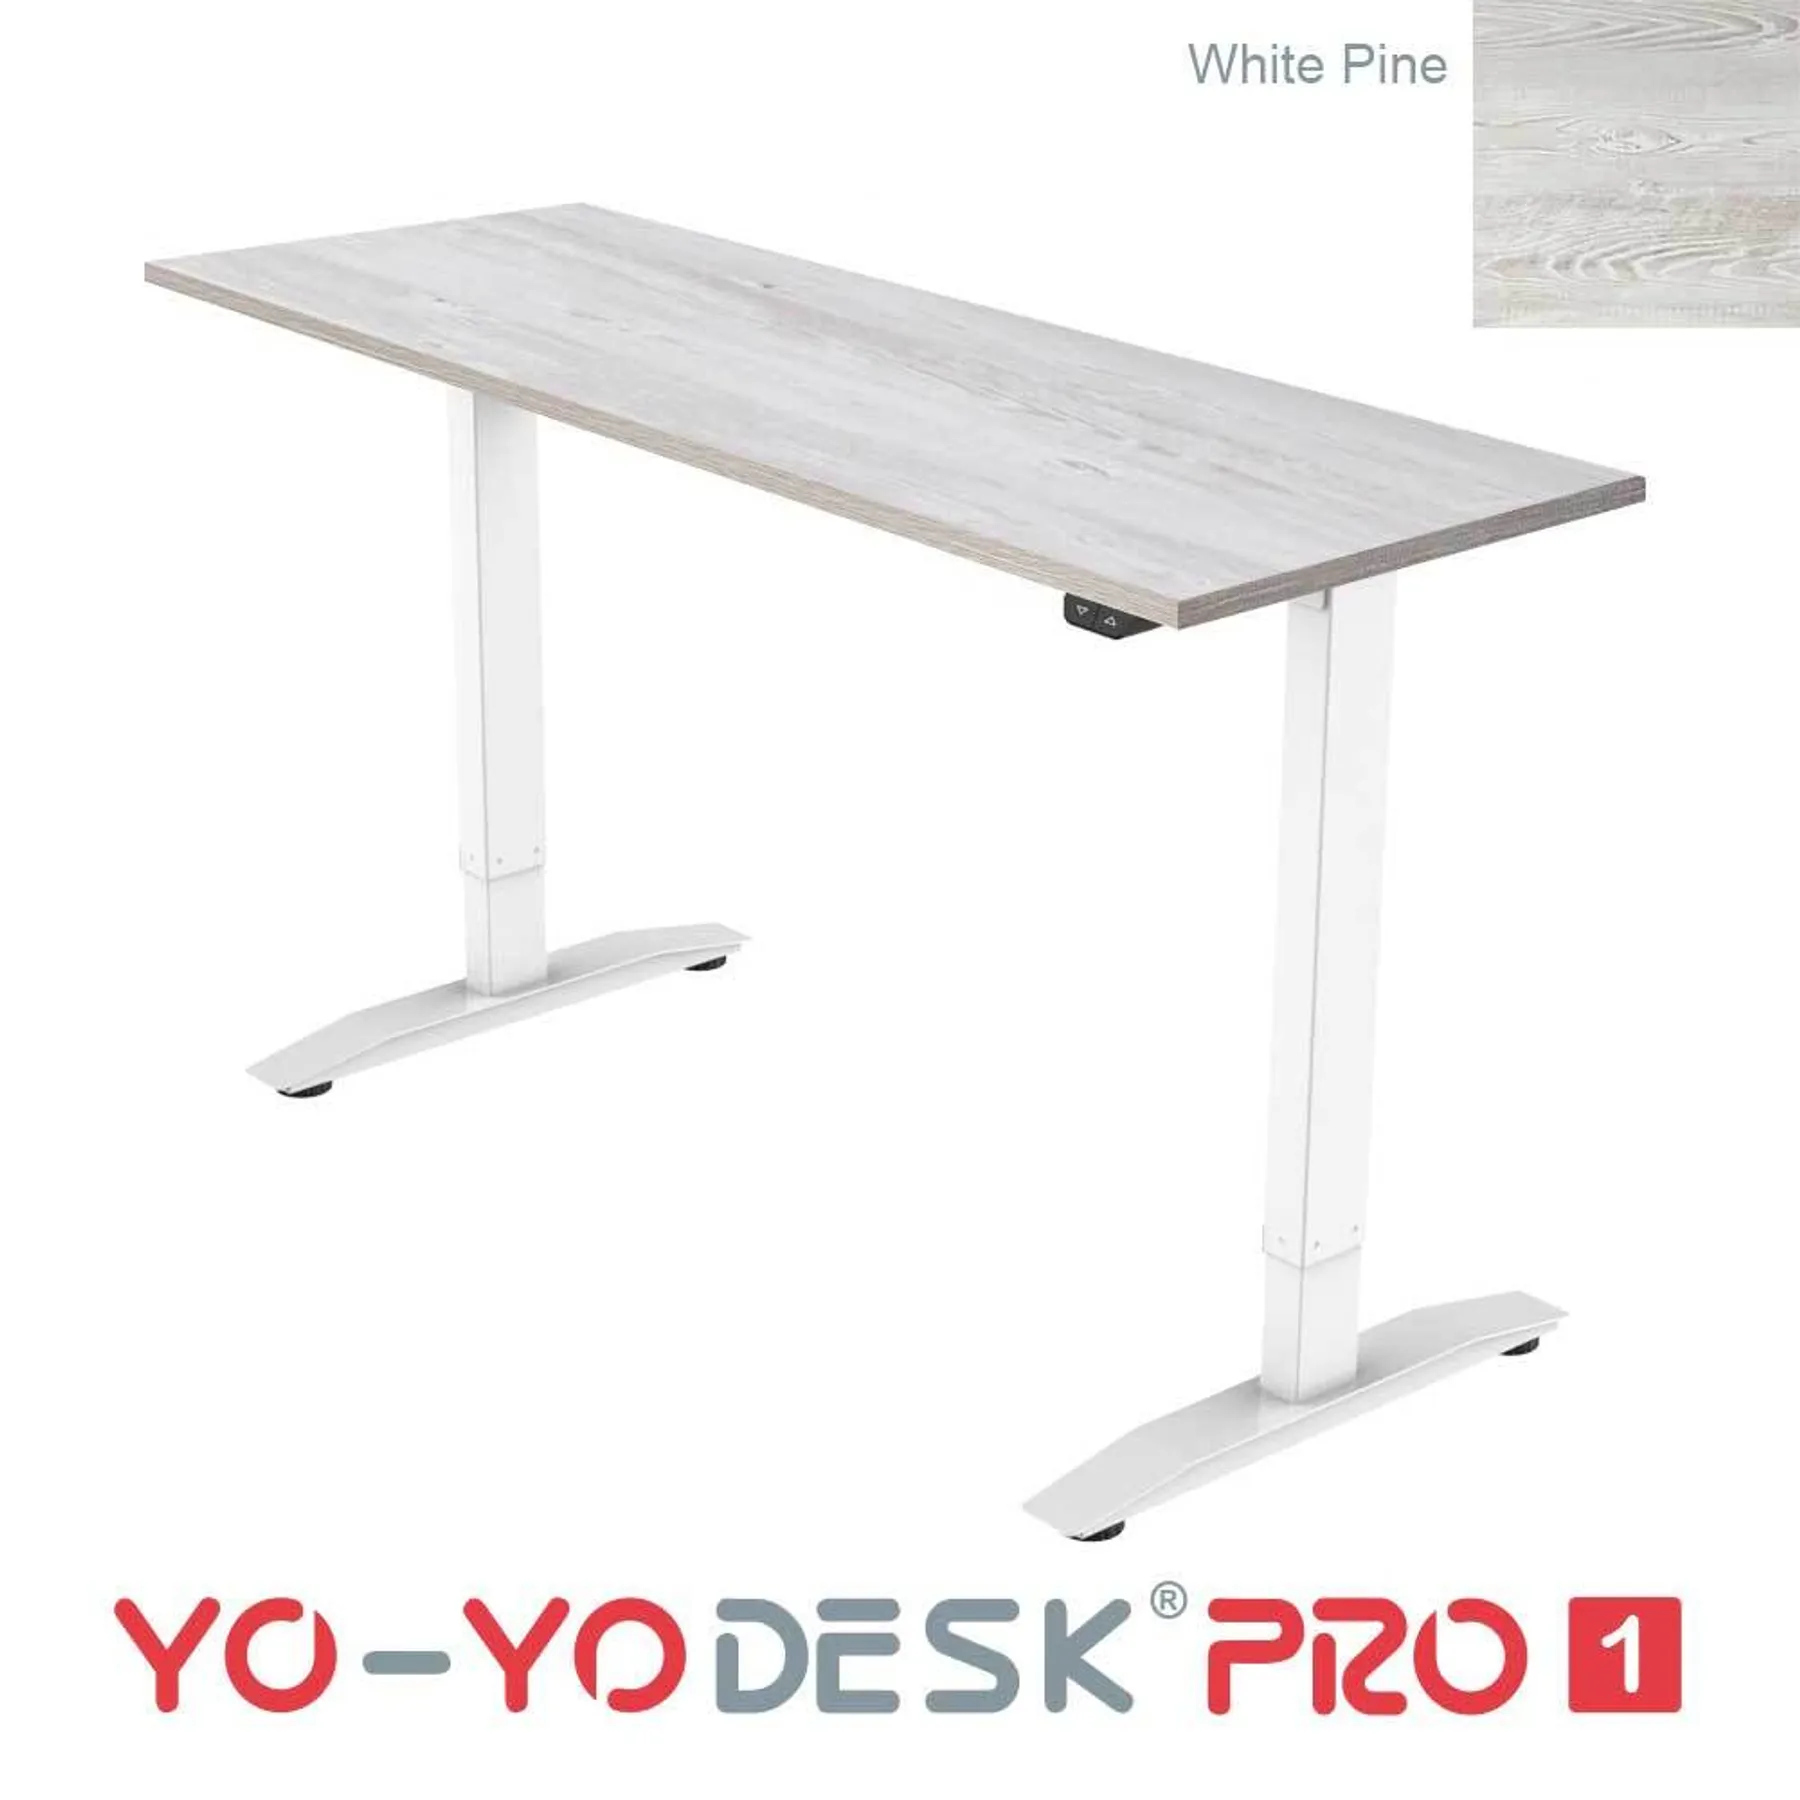 Lof direct yoyo desk pro 1 White Frame White pine top